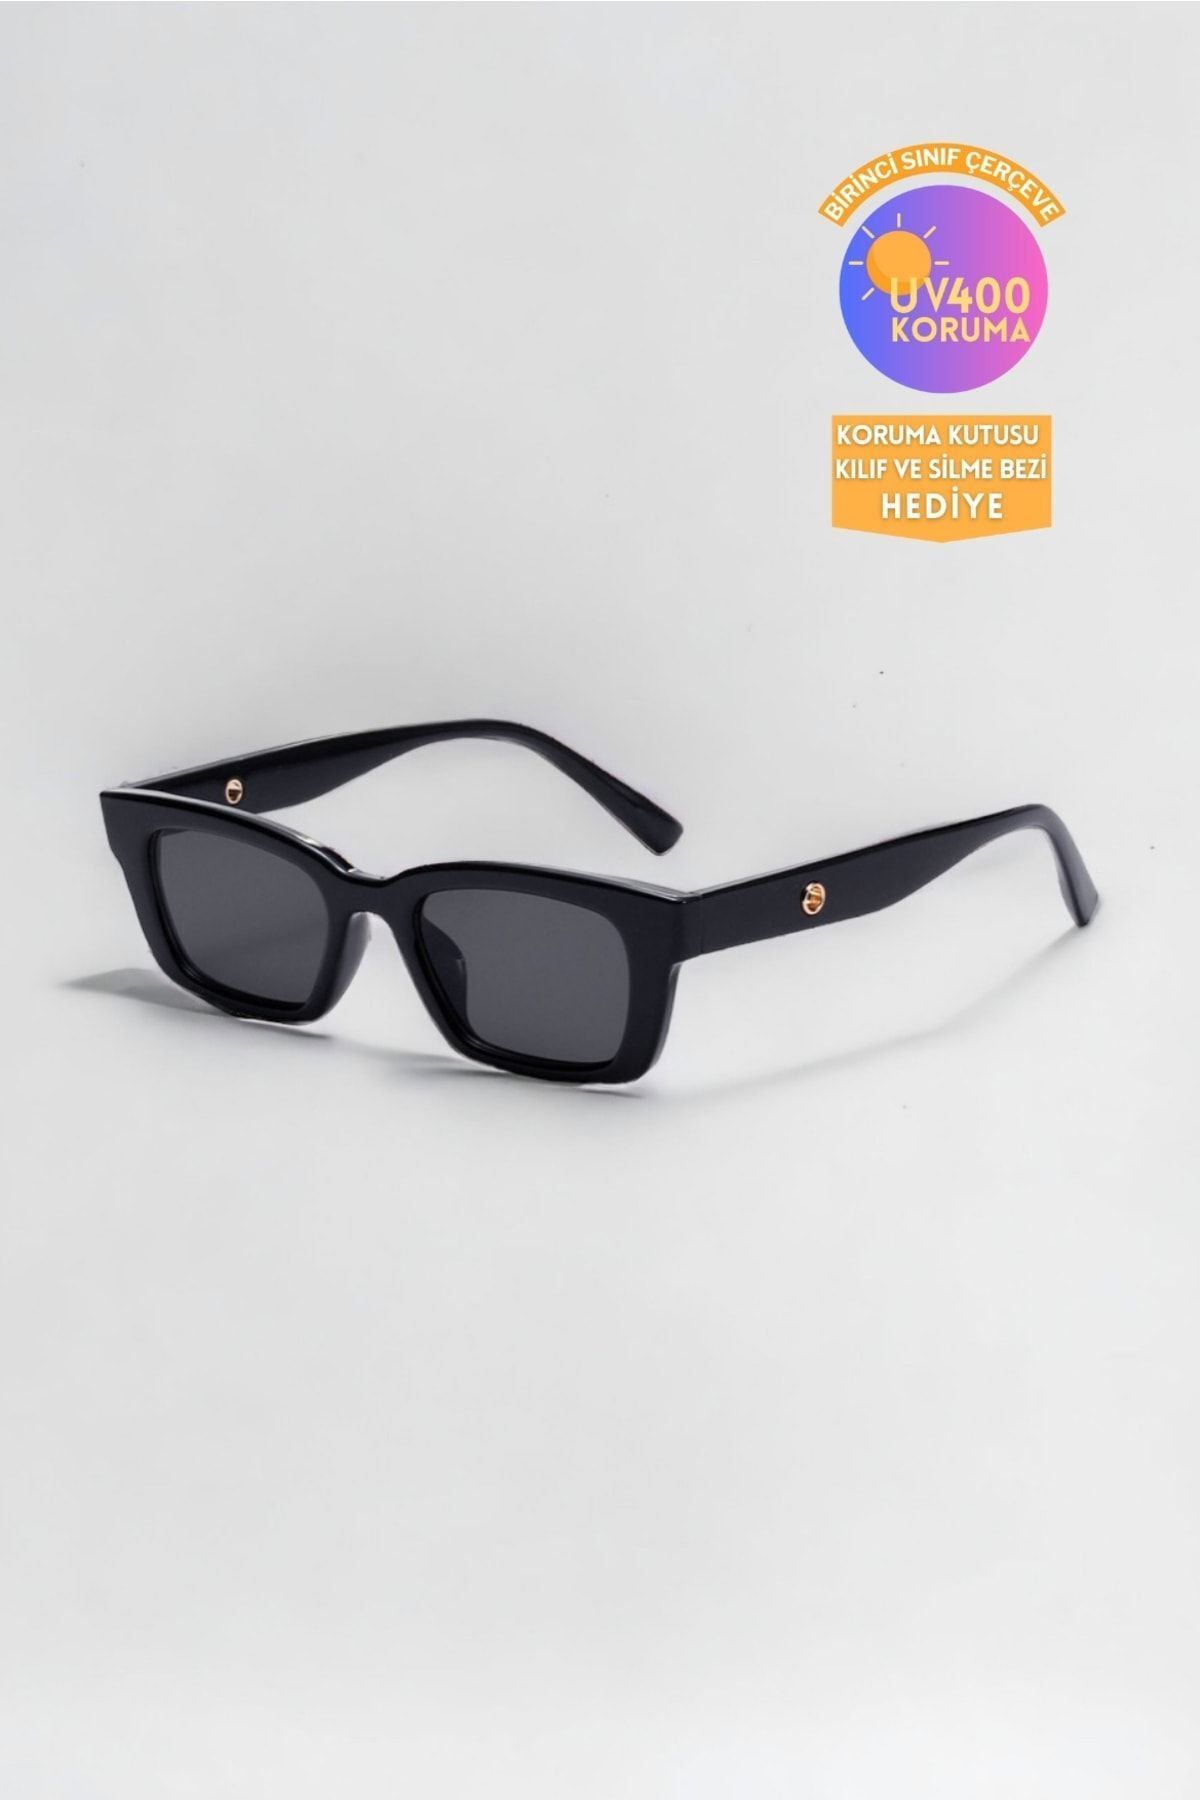 REN accesories Gentle Gözlük Askı Takma Yerli Unisex Siyah Klasik Güneş Gözlüğü /reneyewear